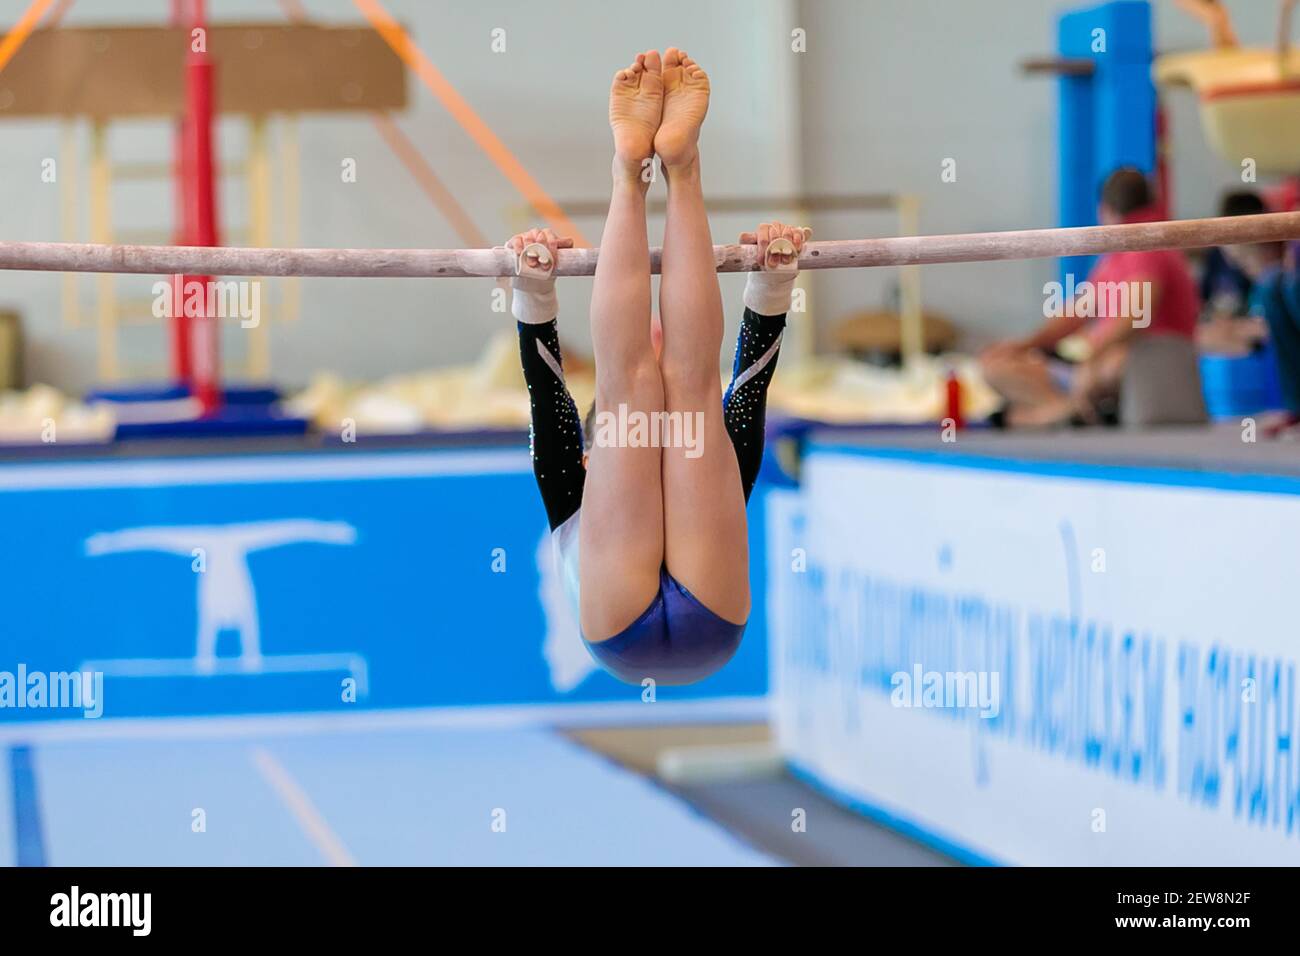 Une fille de vêtements de sport effectue un exercice sur les barres inégales. Gymnastique rythmique, entraînement dans le hall. Banque D'Images